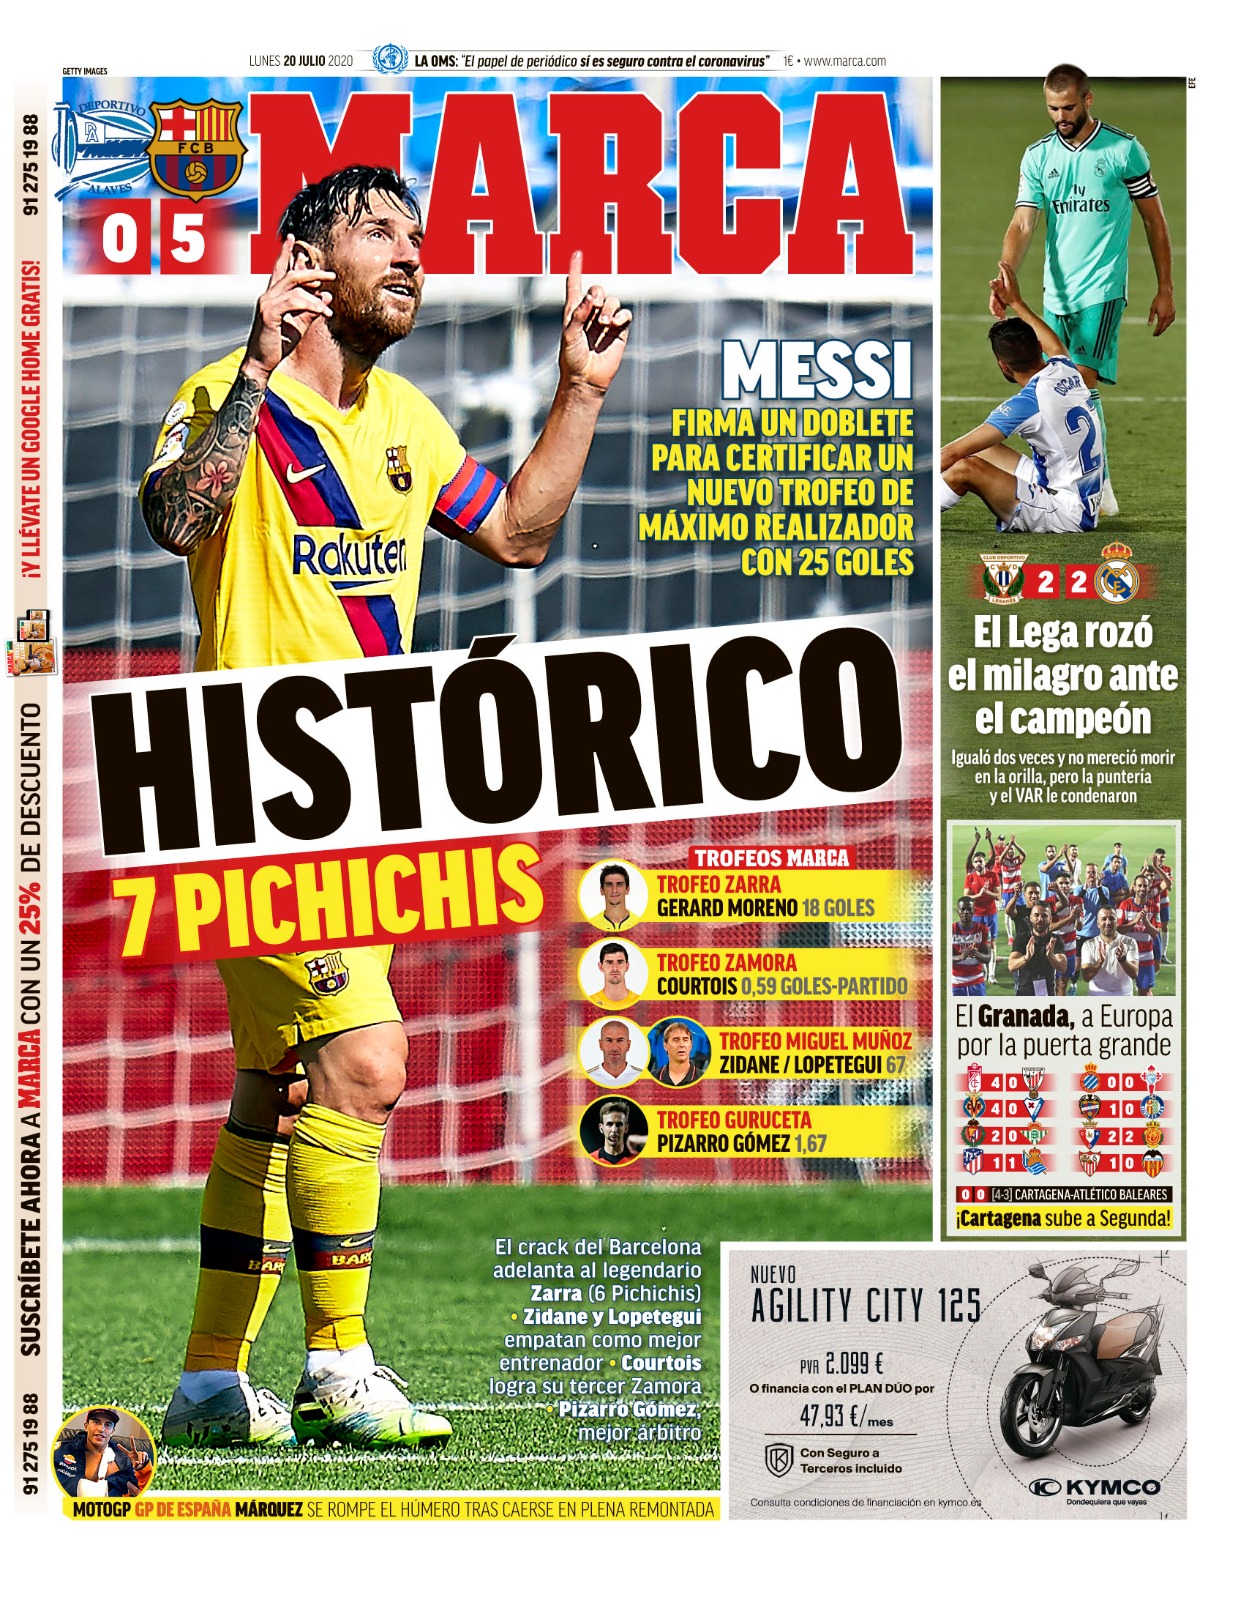 Today S Spanish Papers Lionel Messi Wins Record Seventh Pichichi Granada Seal Europa League Spot And Barcelona Make La Liga Pledge For 21 Football Espana